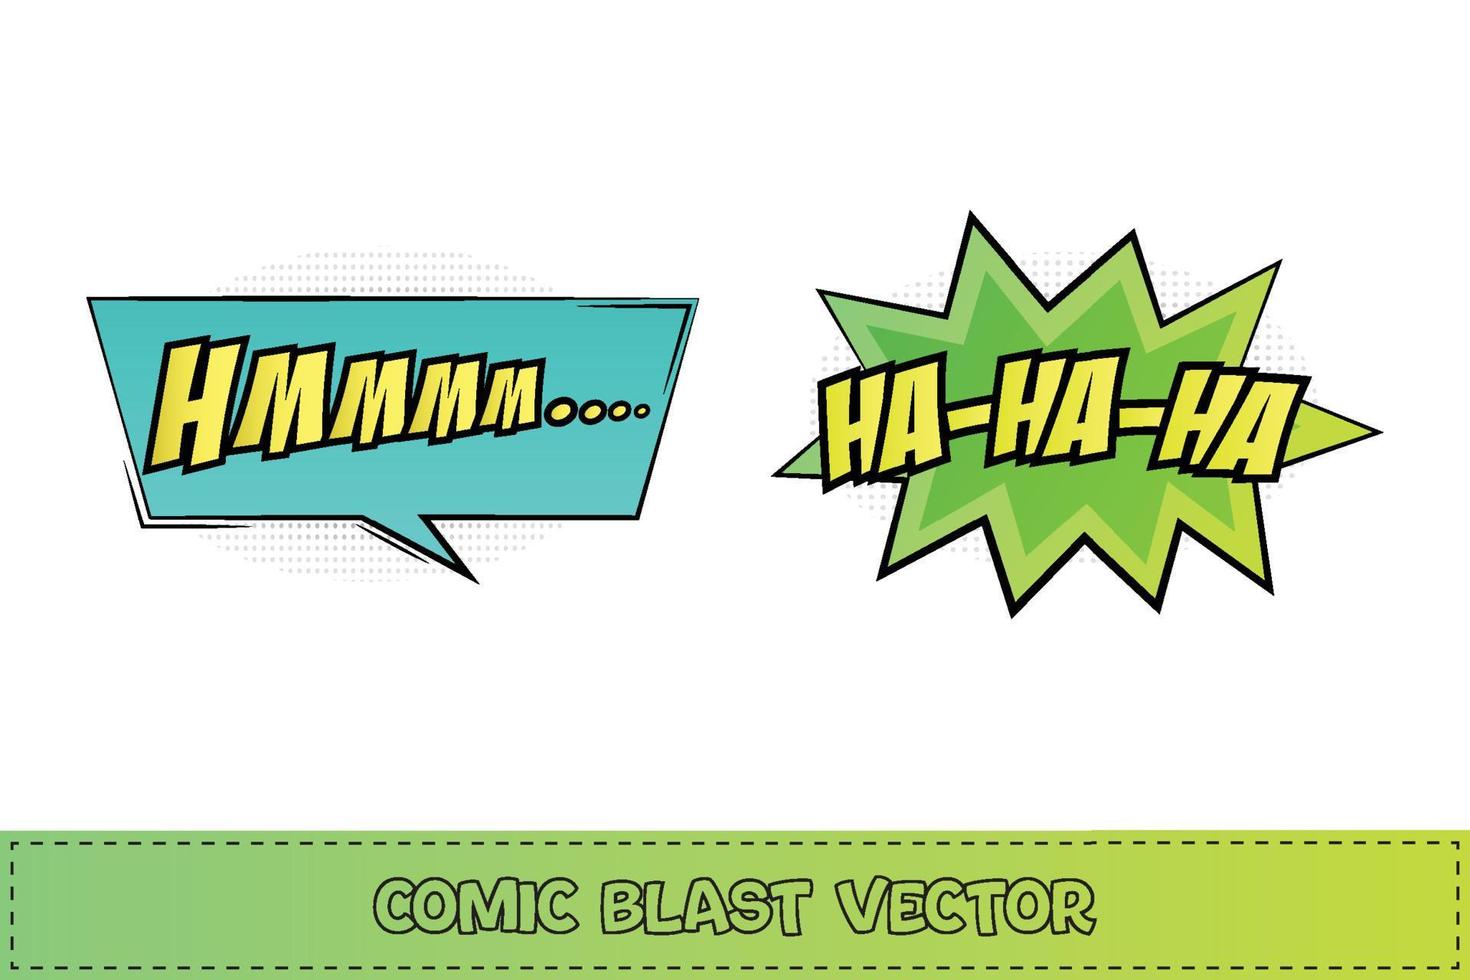 lachender Comic platzt mit hellgrünen und gelben Farben. hmm komischer Knall mit gelber und blauer Farbe. komische Explosion. lachende Blase für Cartoon-Reden. Comic-Sprachexplosionsvektor. vektor